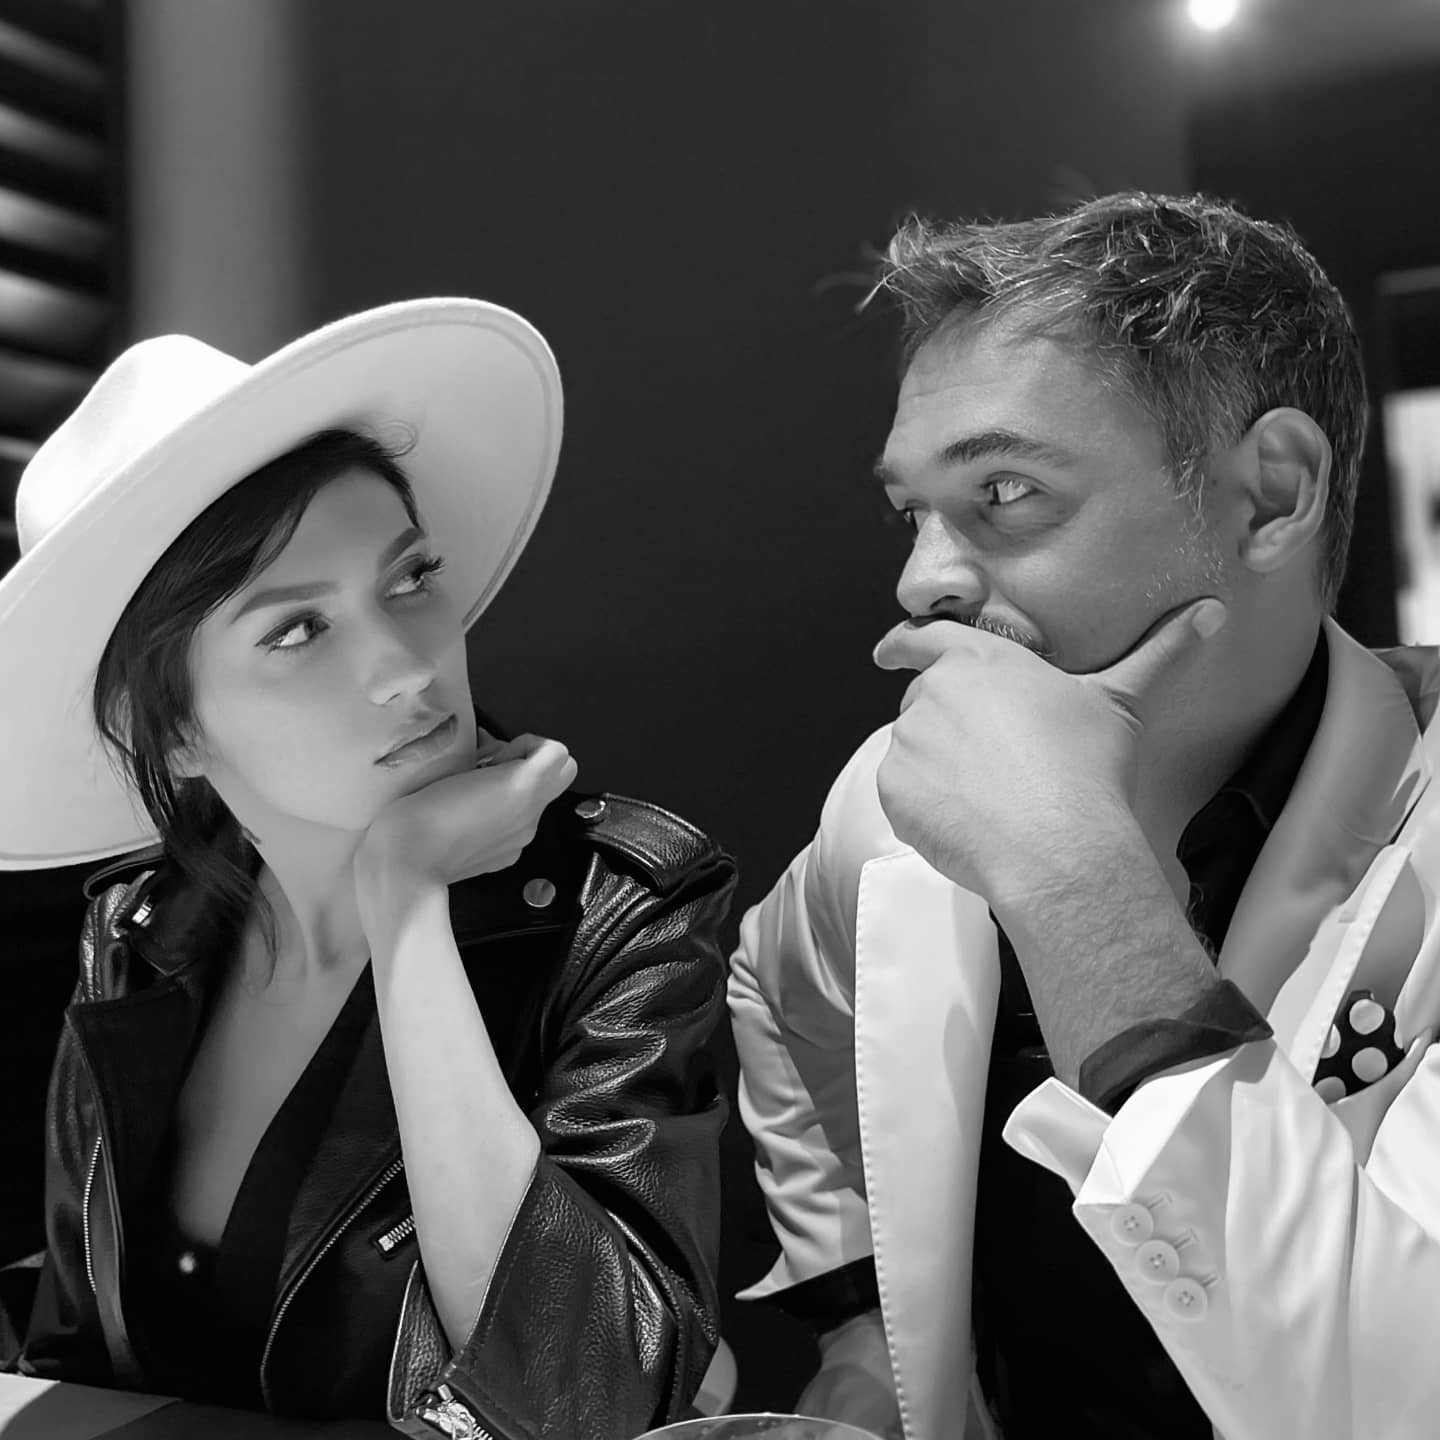 Daliana Răducan și Răzvan Simion, uitându-se unul la celălalt, în timpul unei ieșiri la restaurant.